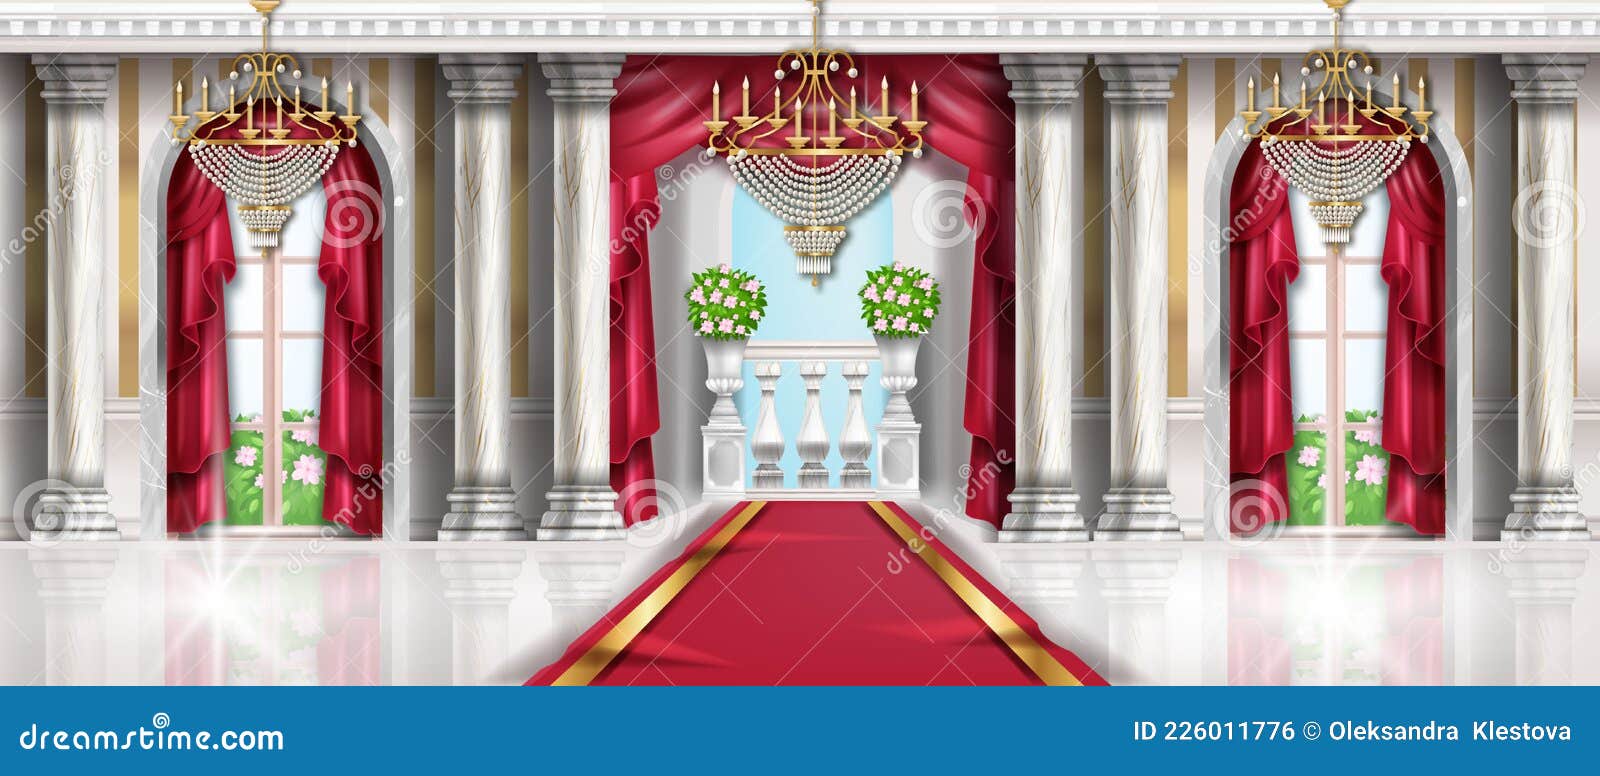 Hình nền khoang cung điện được thiết kế bằng vector vô cùng độc đáo sẽ mang đến cho bạn một trải nghiệm tráng lệ như hoàng tộc. Hãy xem để khám phá không gian rộng lớn và tráng lệ này.